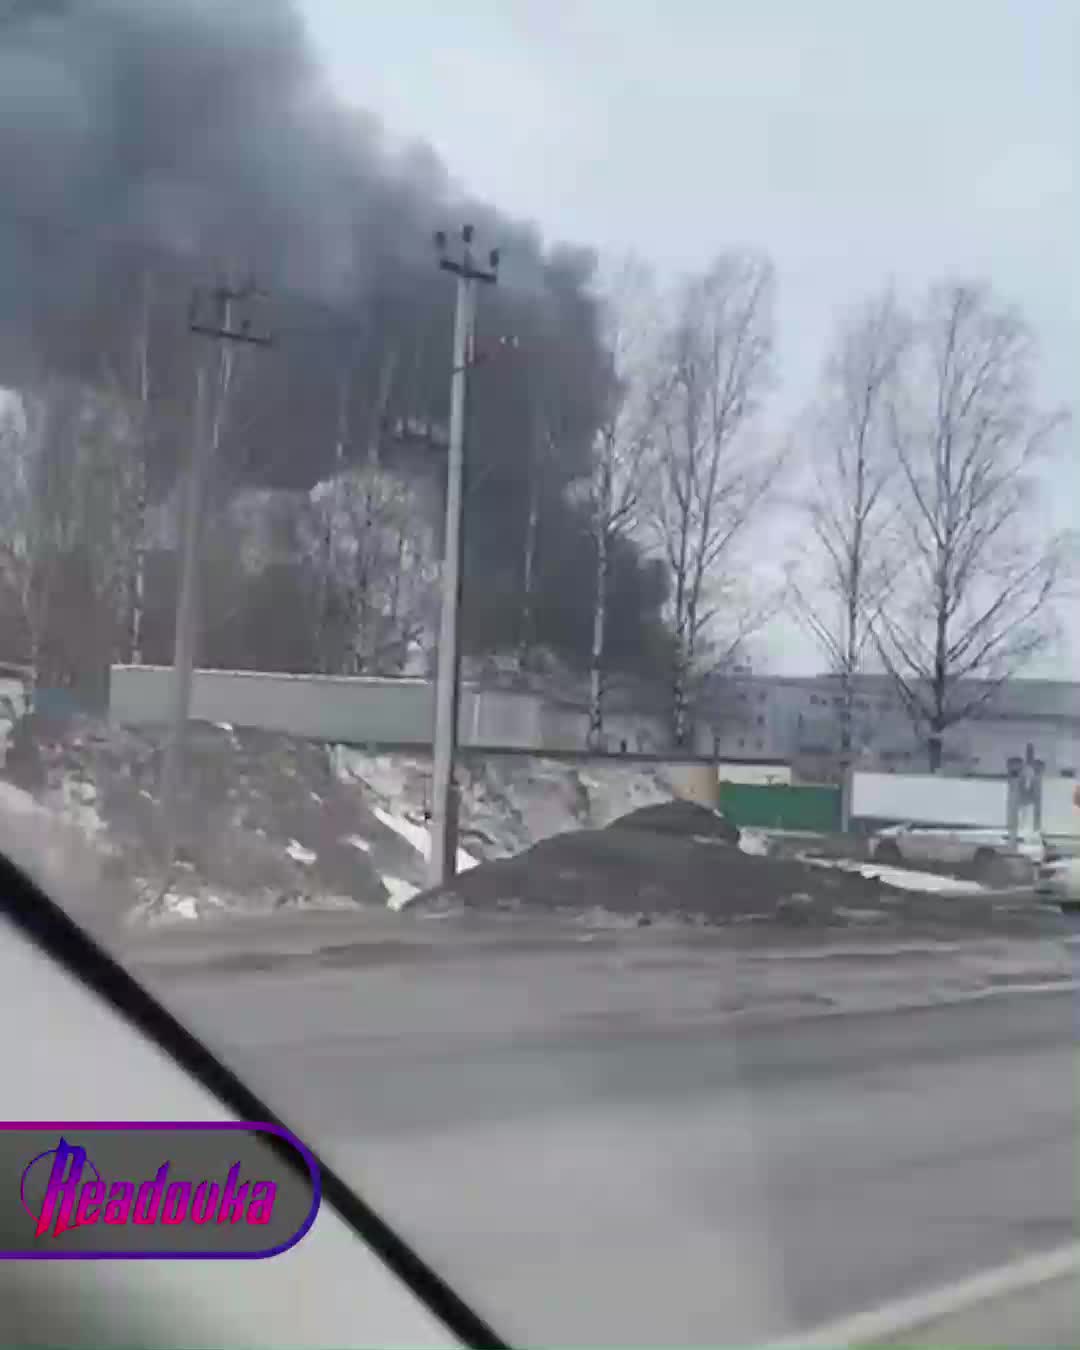 普尔科沃机场附近发生大火